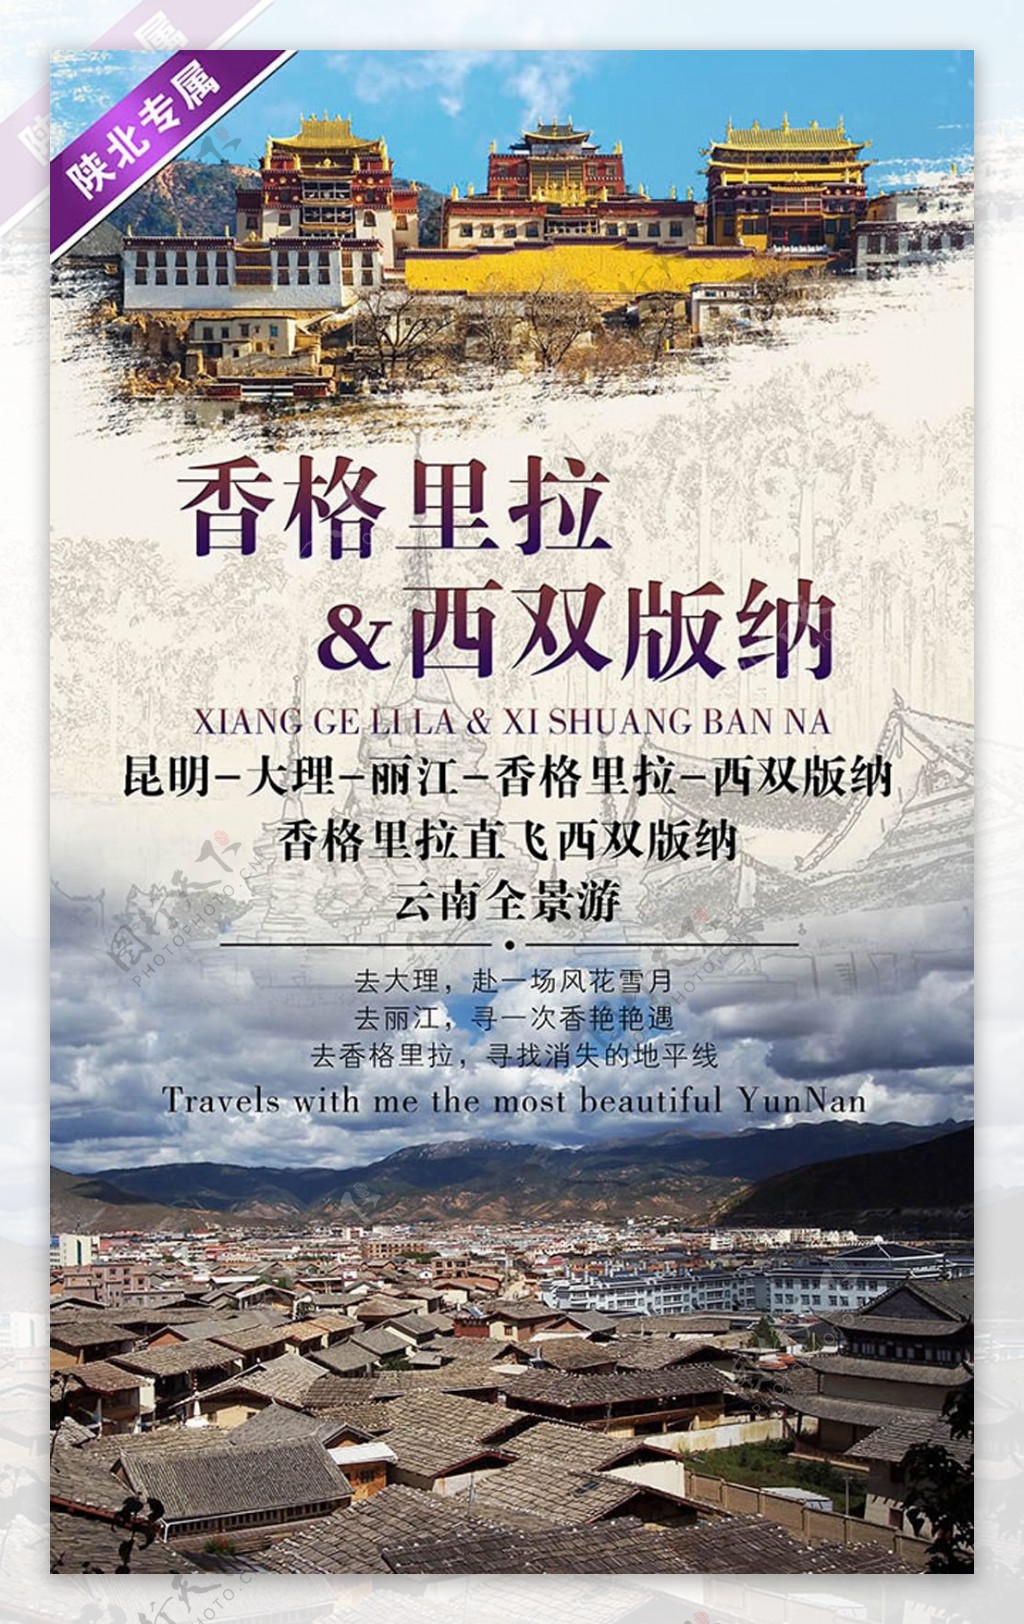 复古中国风旅游海报设计psd素材